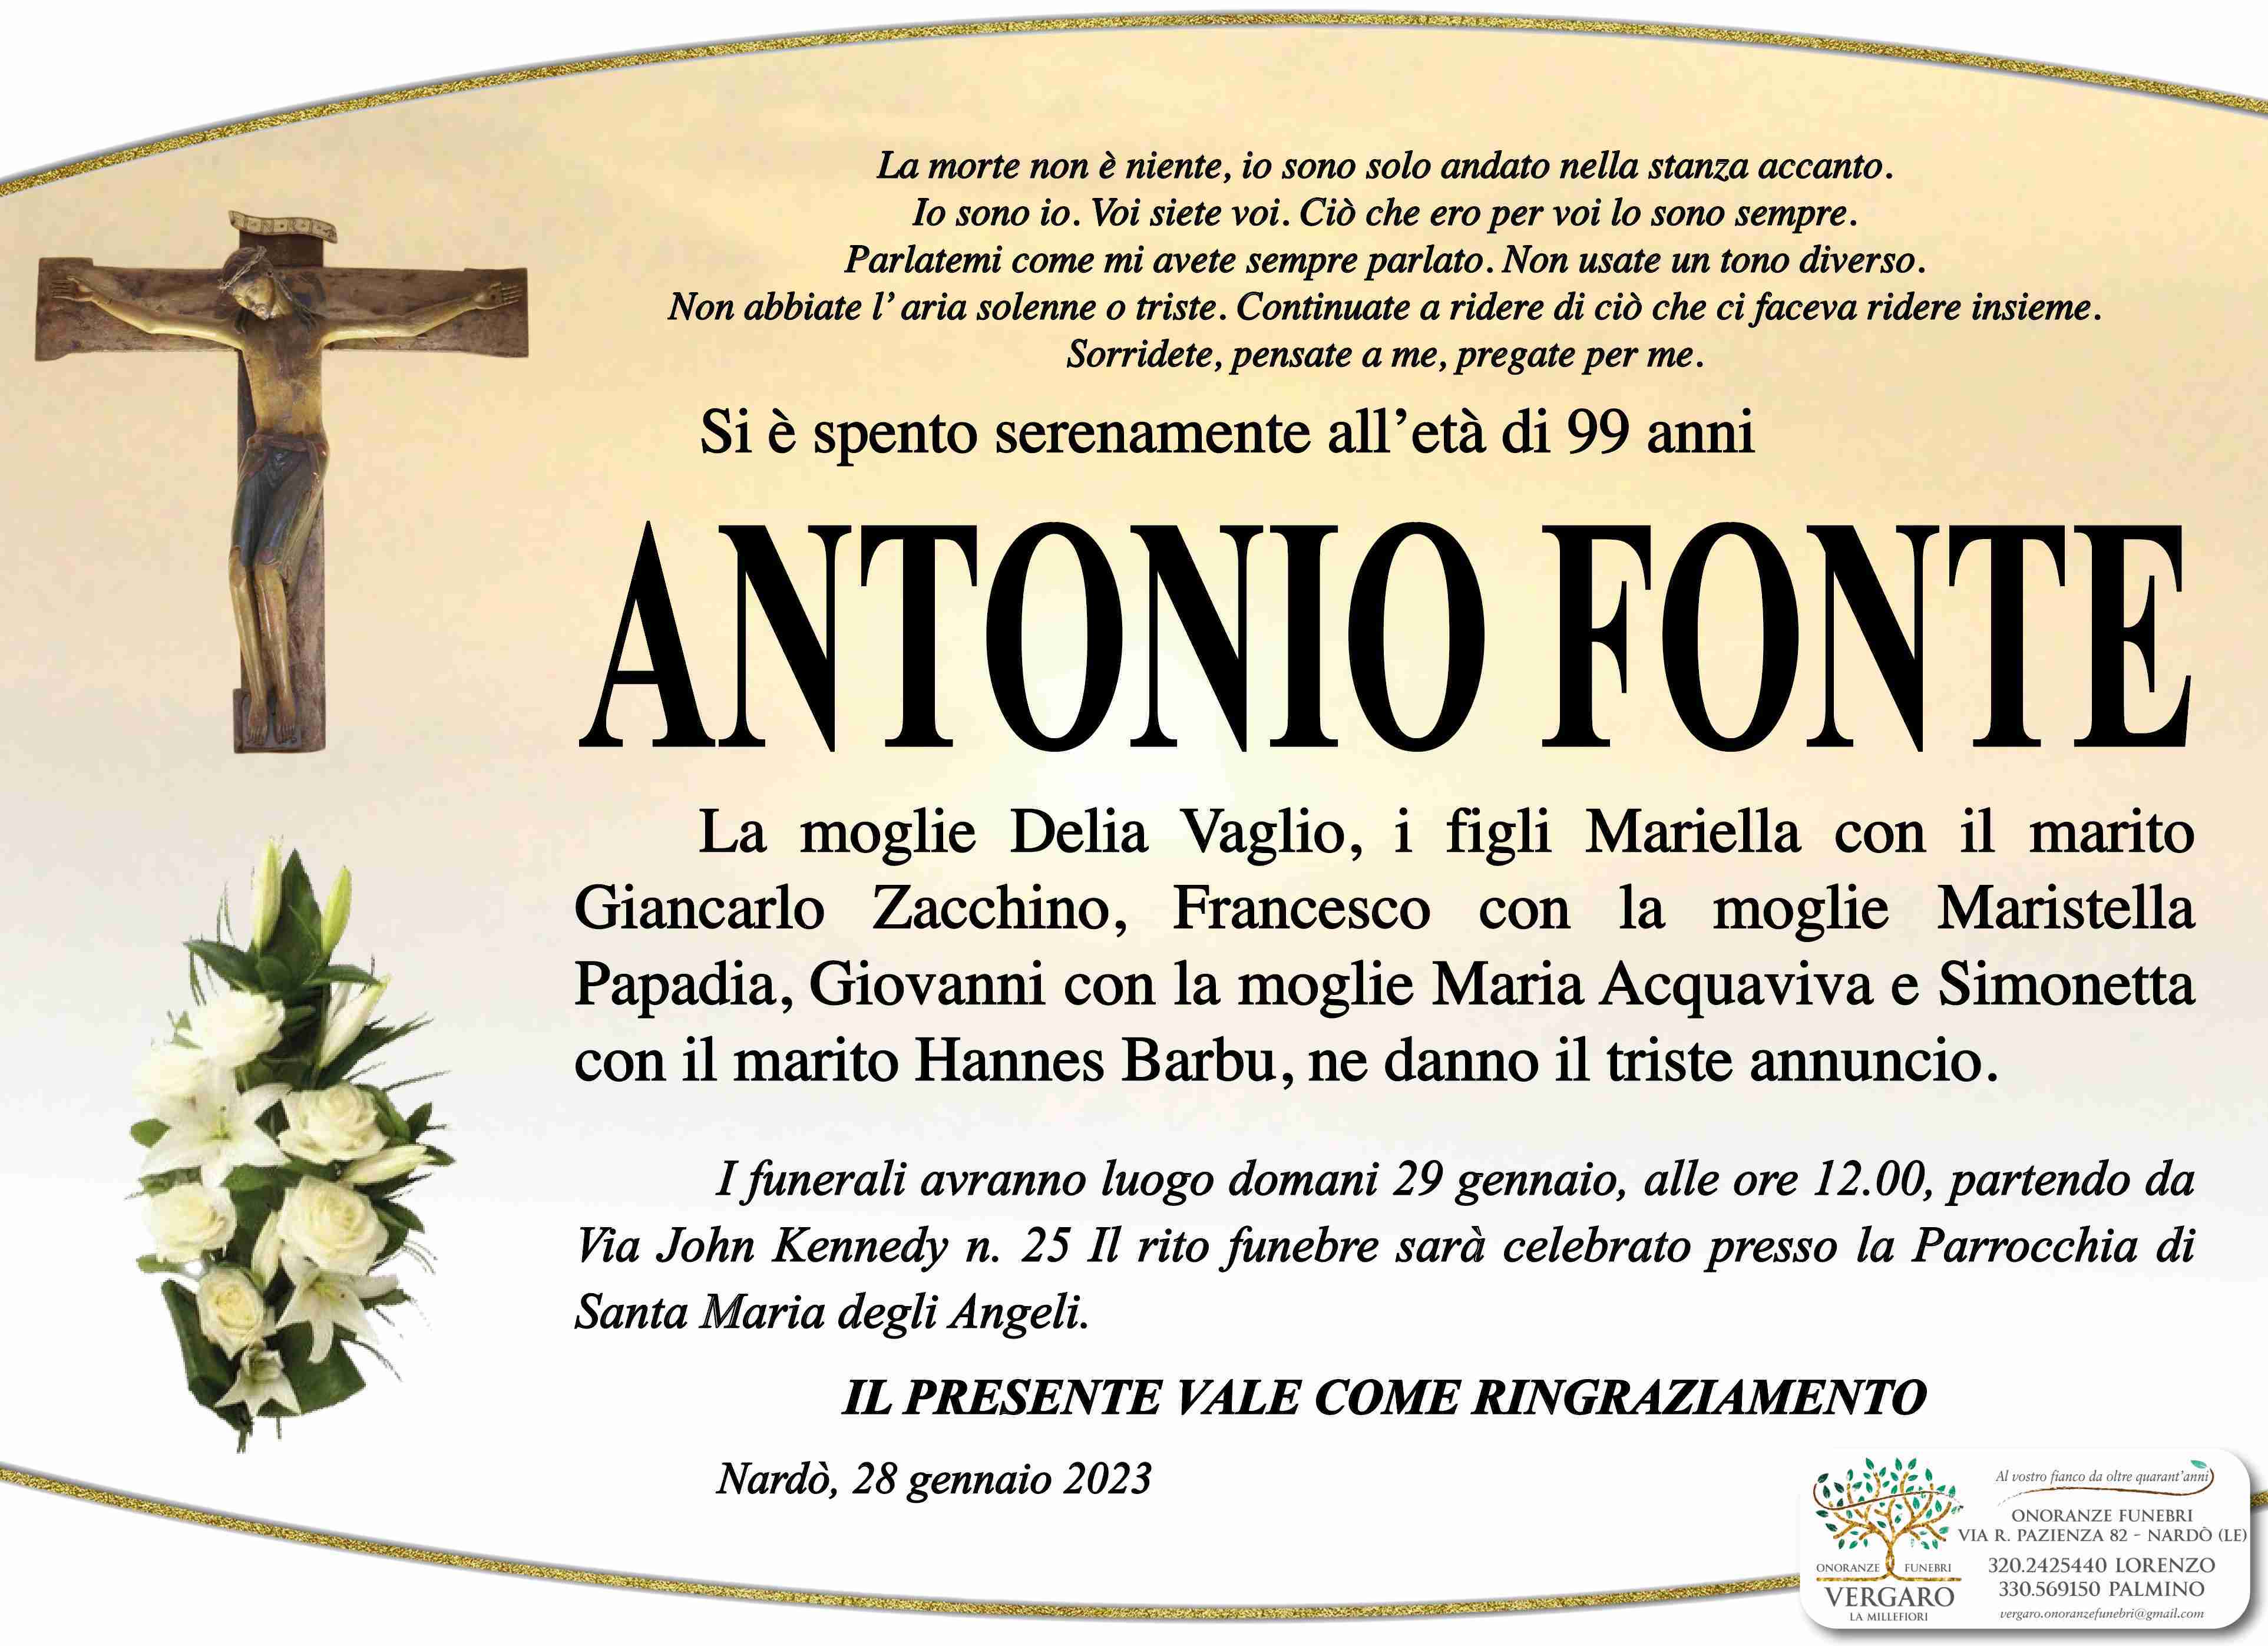 Antonio Fonte